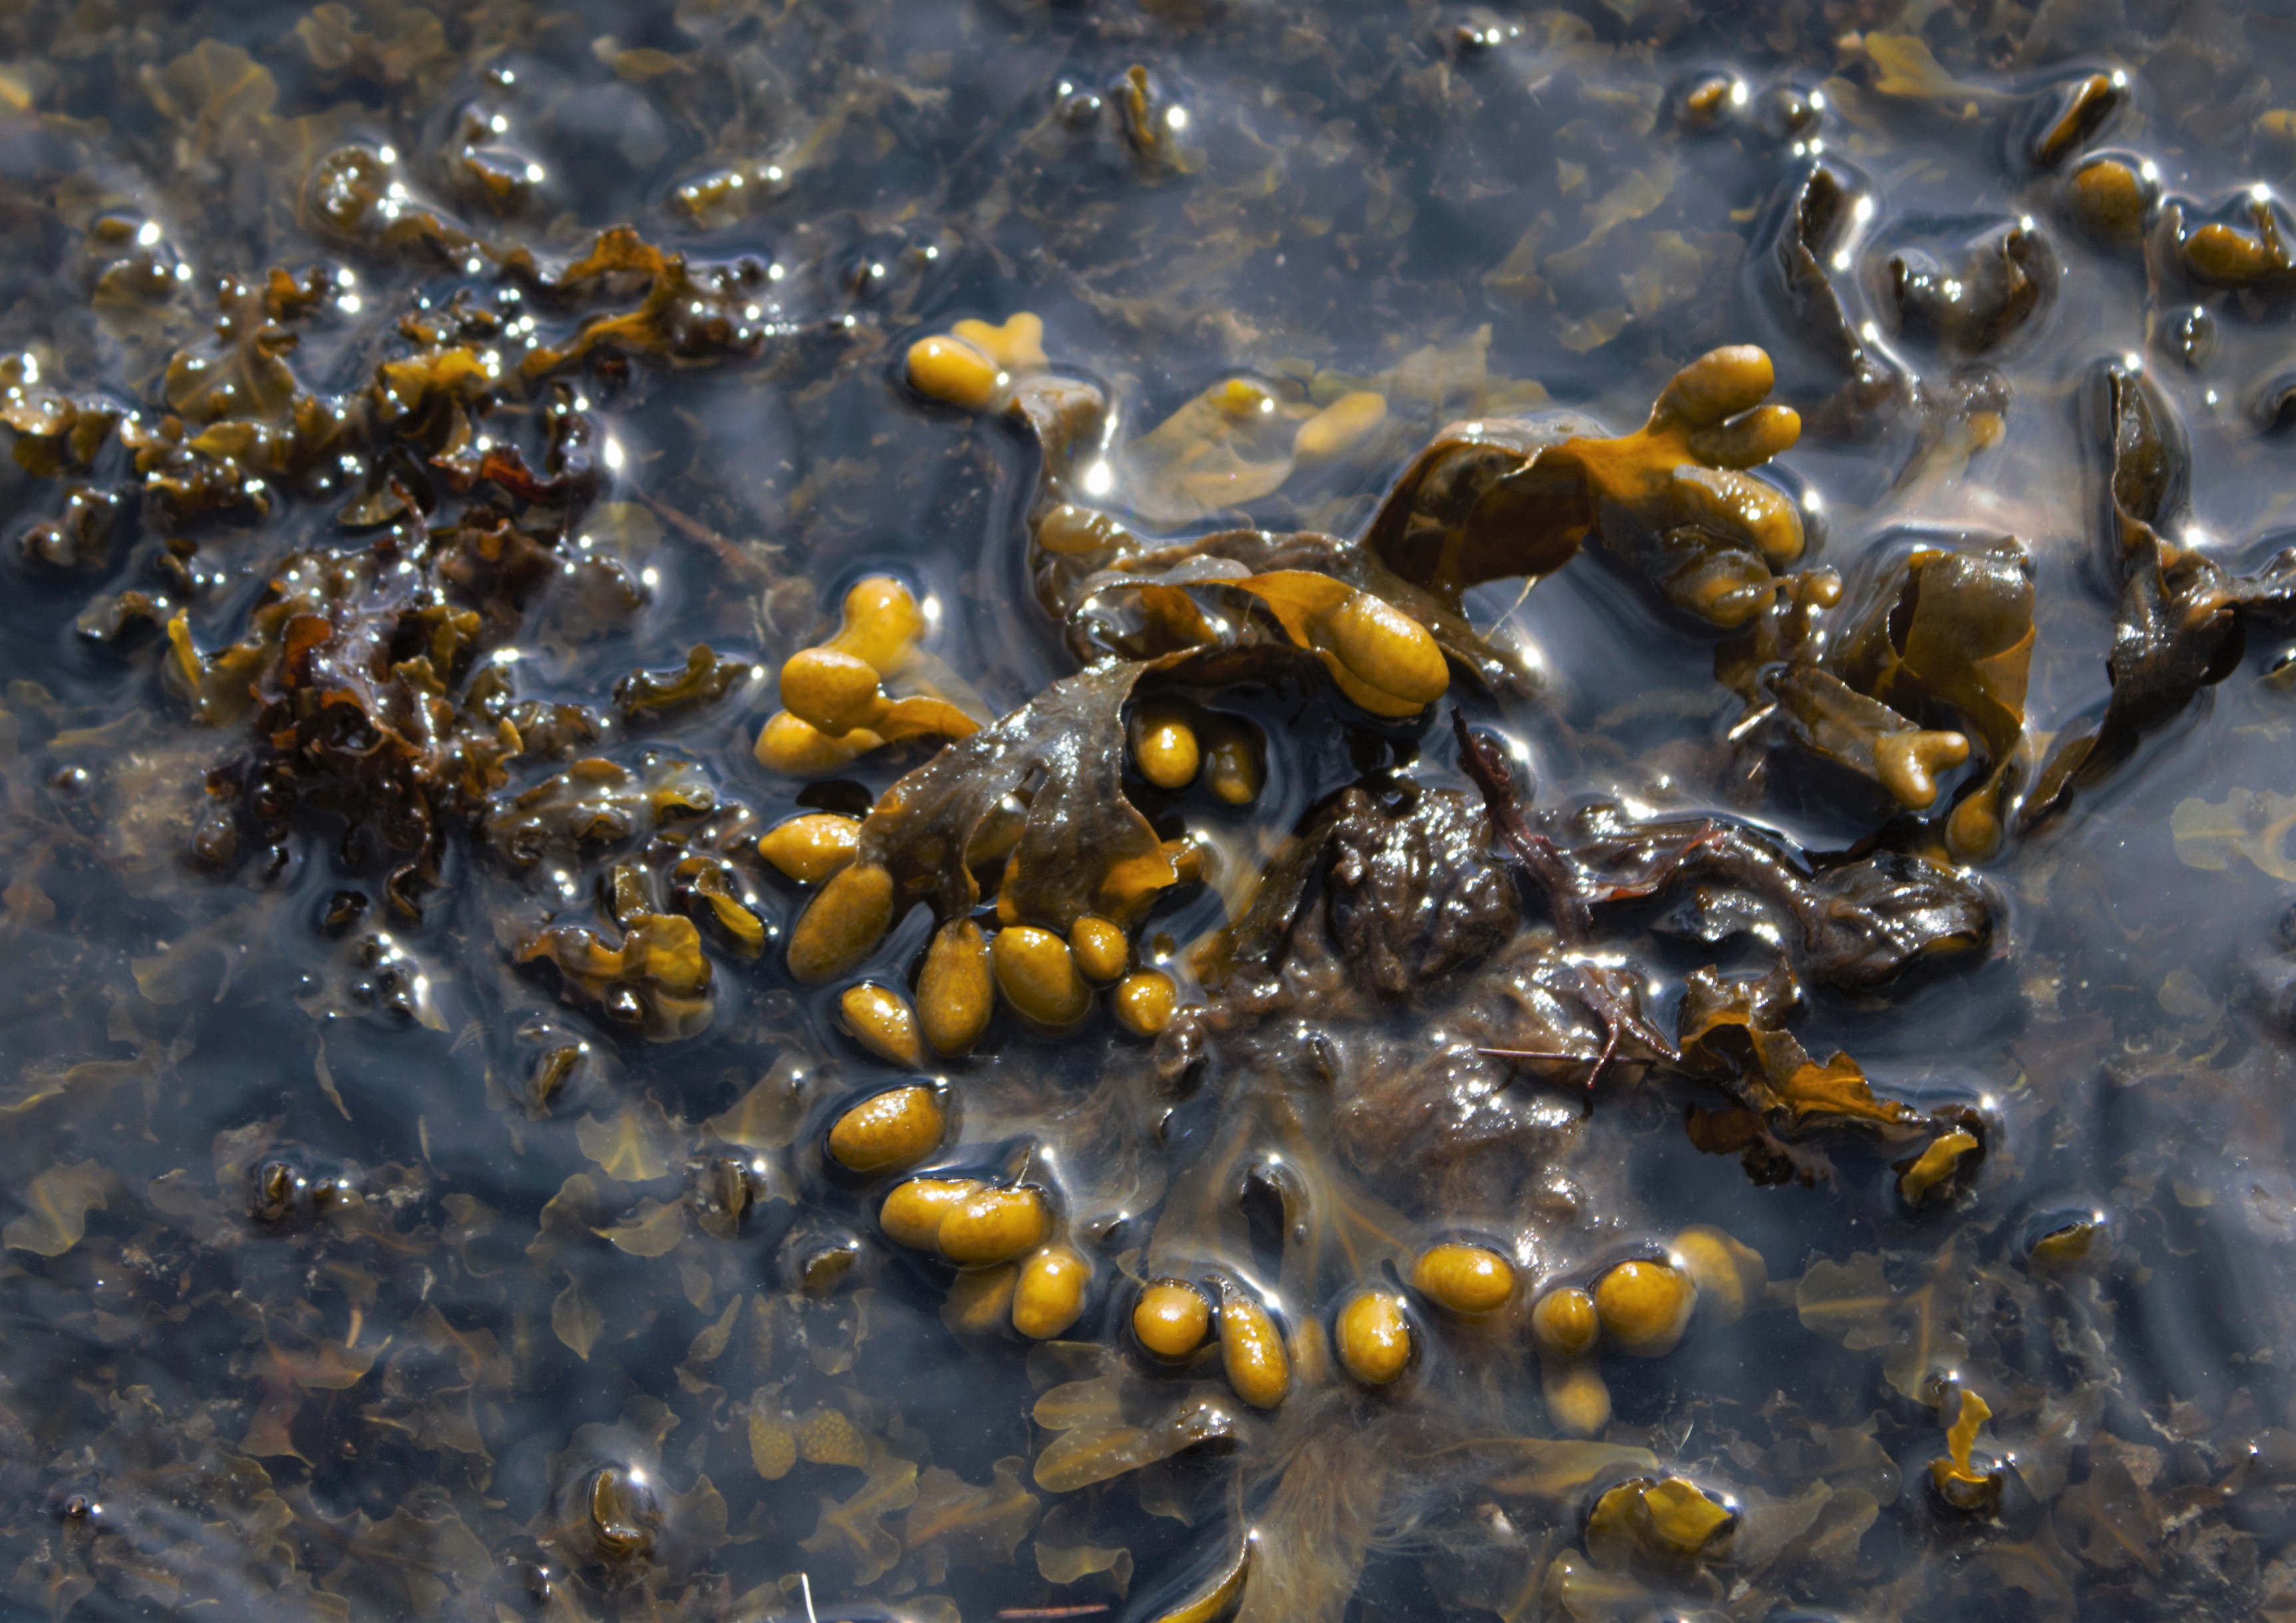 bladderwrack farming - Origin by Ocean